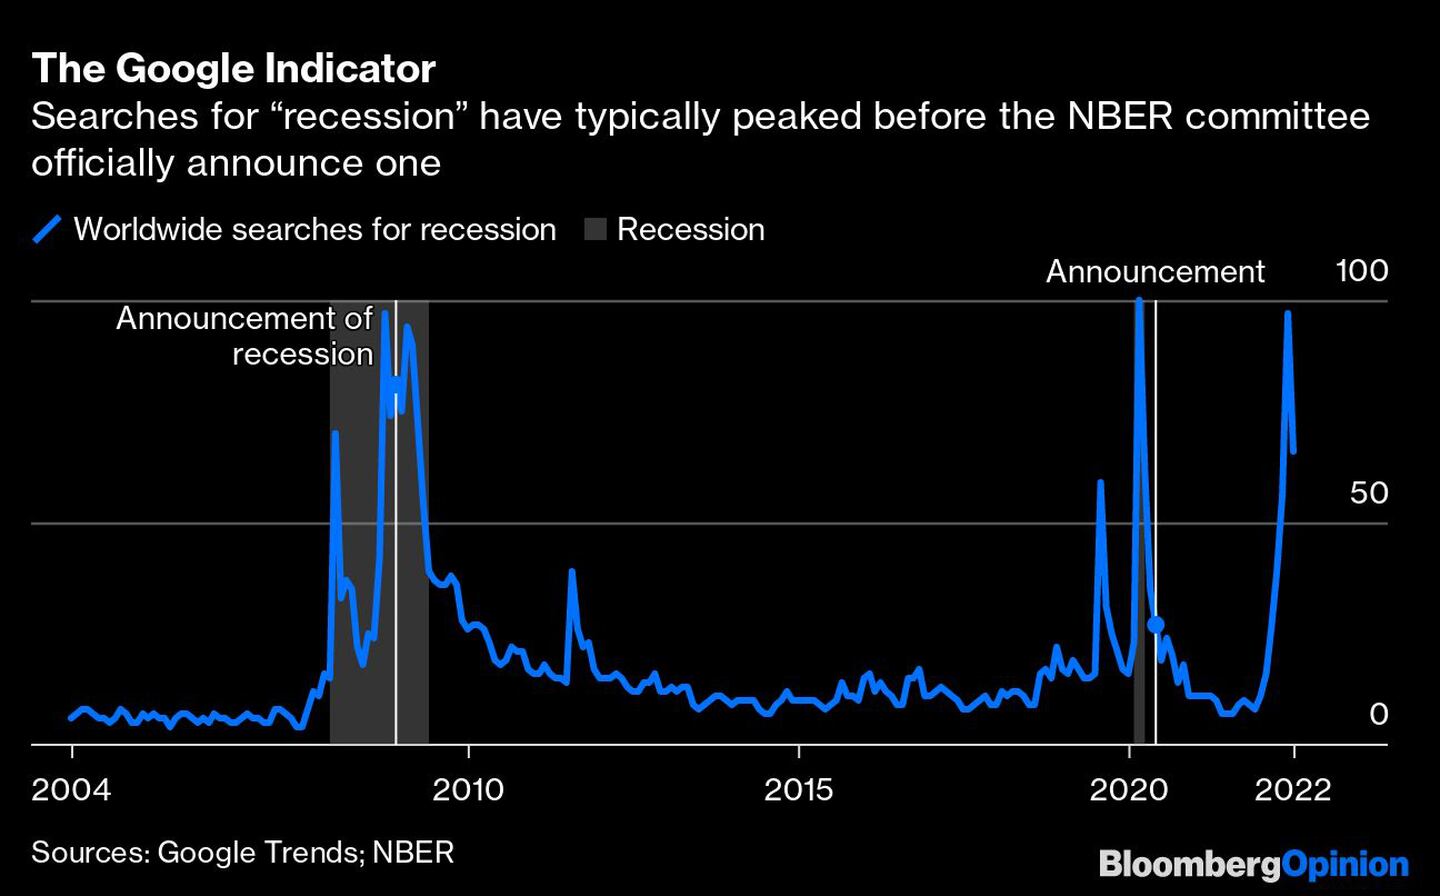 Las búsquedas de recesión suelen alcanzar un máximo antes de que el comité del NBER anuncie oficialmente unadfd